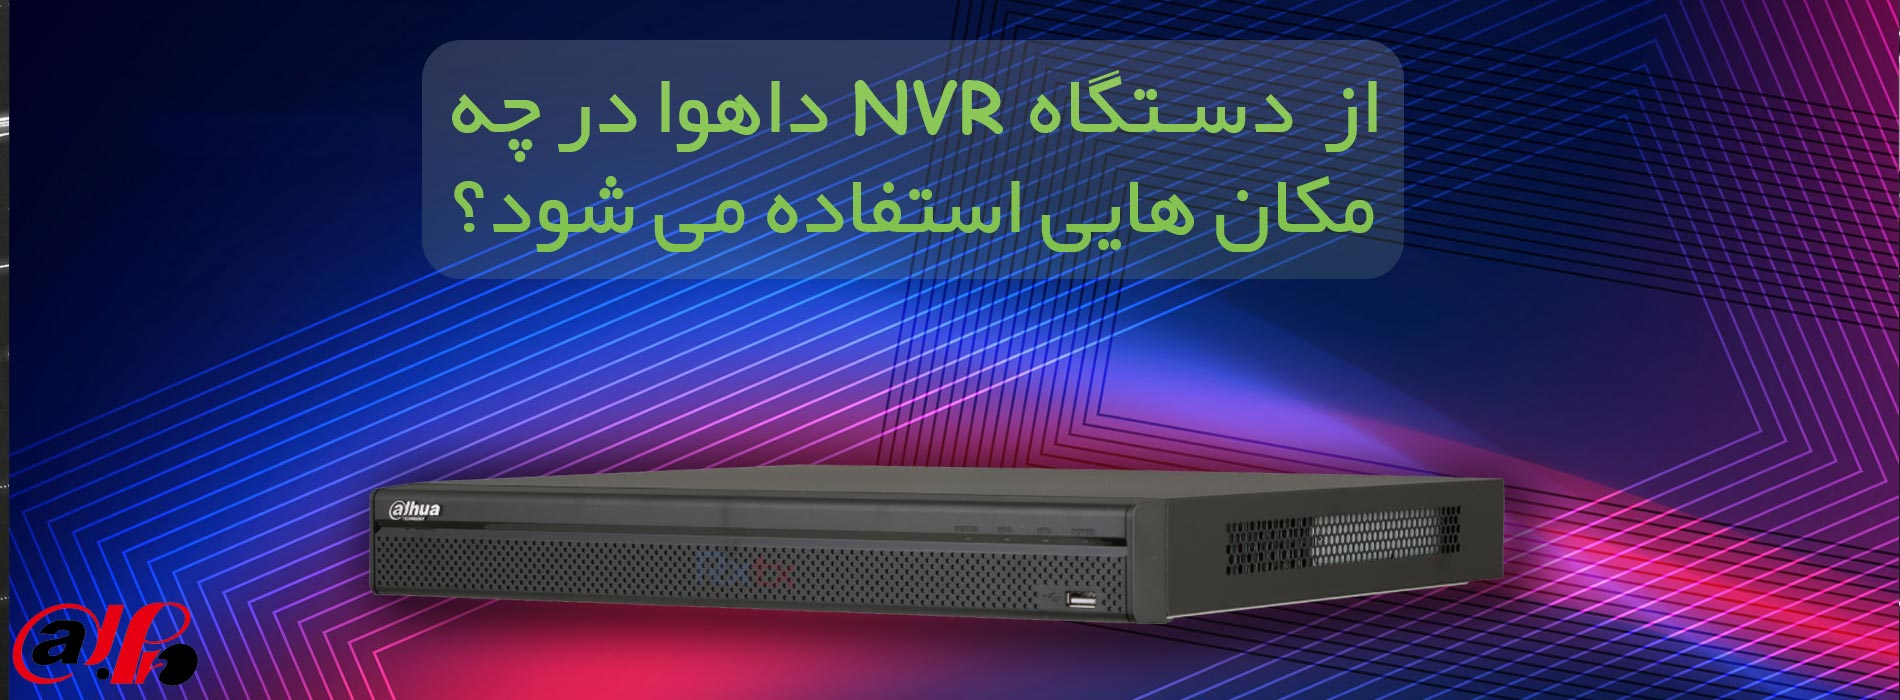 استفاده از دستگاه NVR داهوا در مگان های مختلف